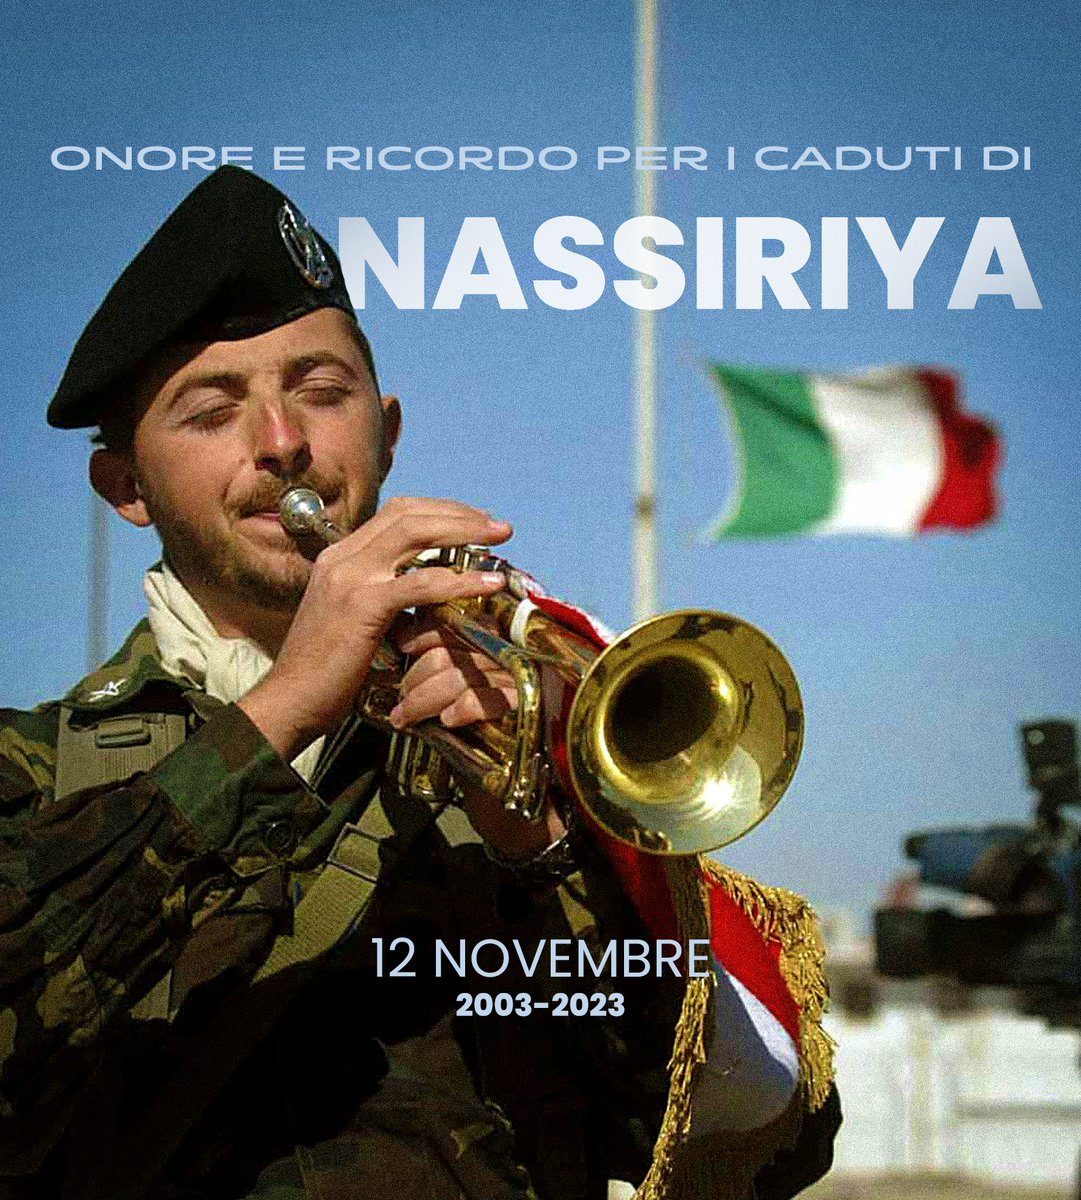 #12novembre
#Nassiriya
🇮🇹💙🙏